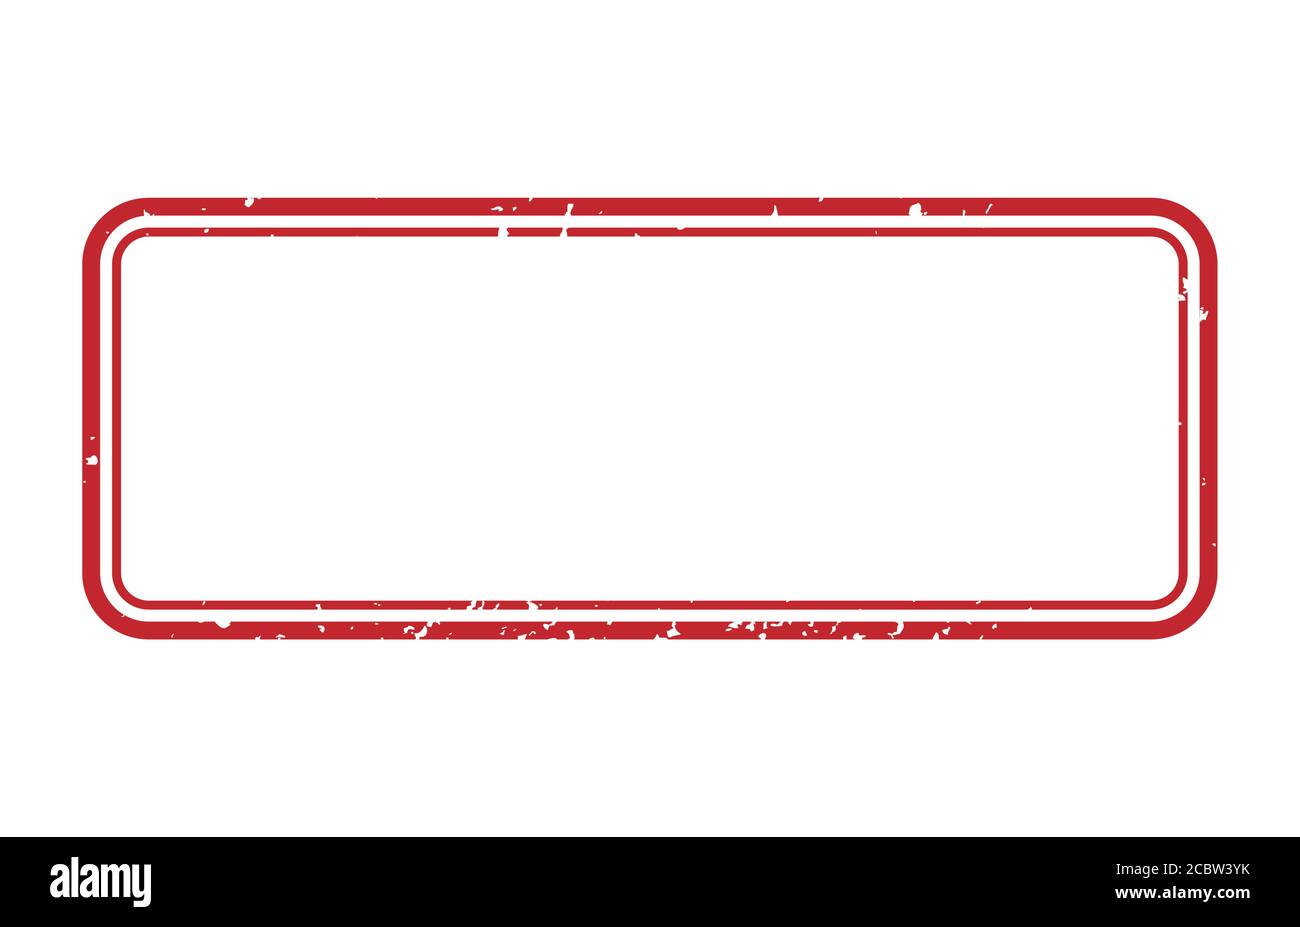 Vektor-Illustration Rahmen von Gummi-Stempel. Grunge rote Markierung Rahmen. Stock Vektor